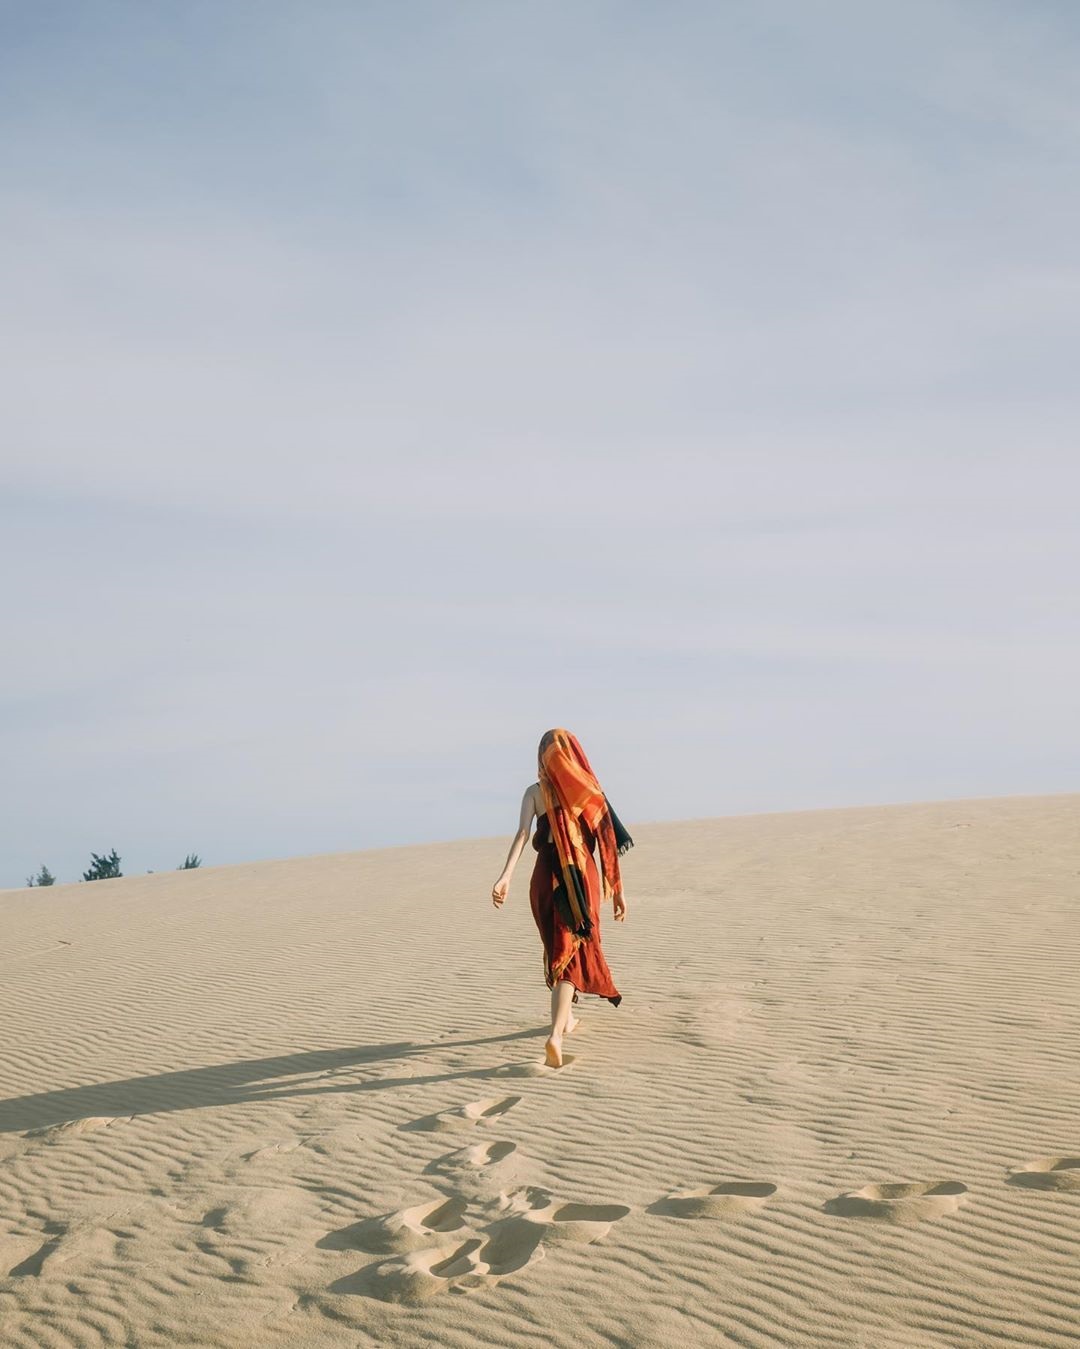 Cồn cát Quang Phú, thiên đường cát với những khoảnh khắc vô cùng đáng nhớ 6